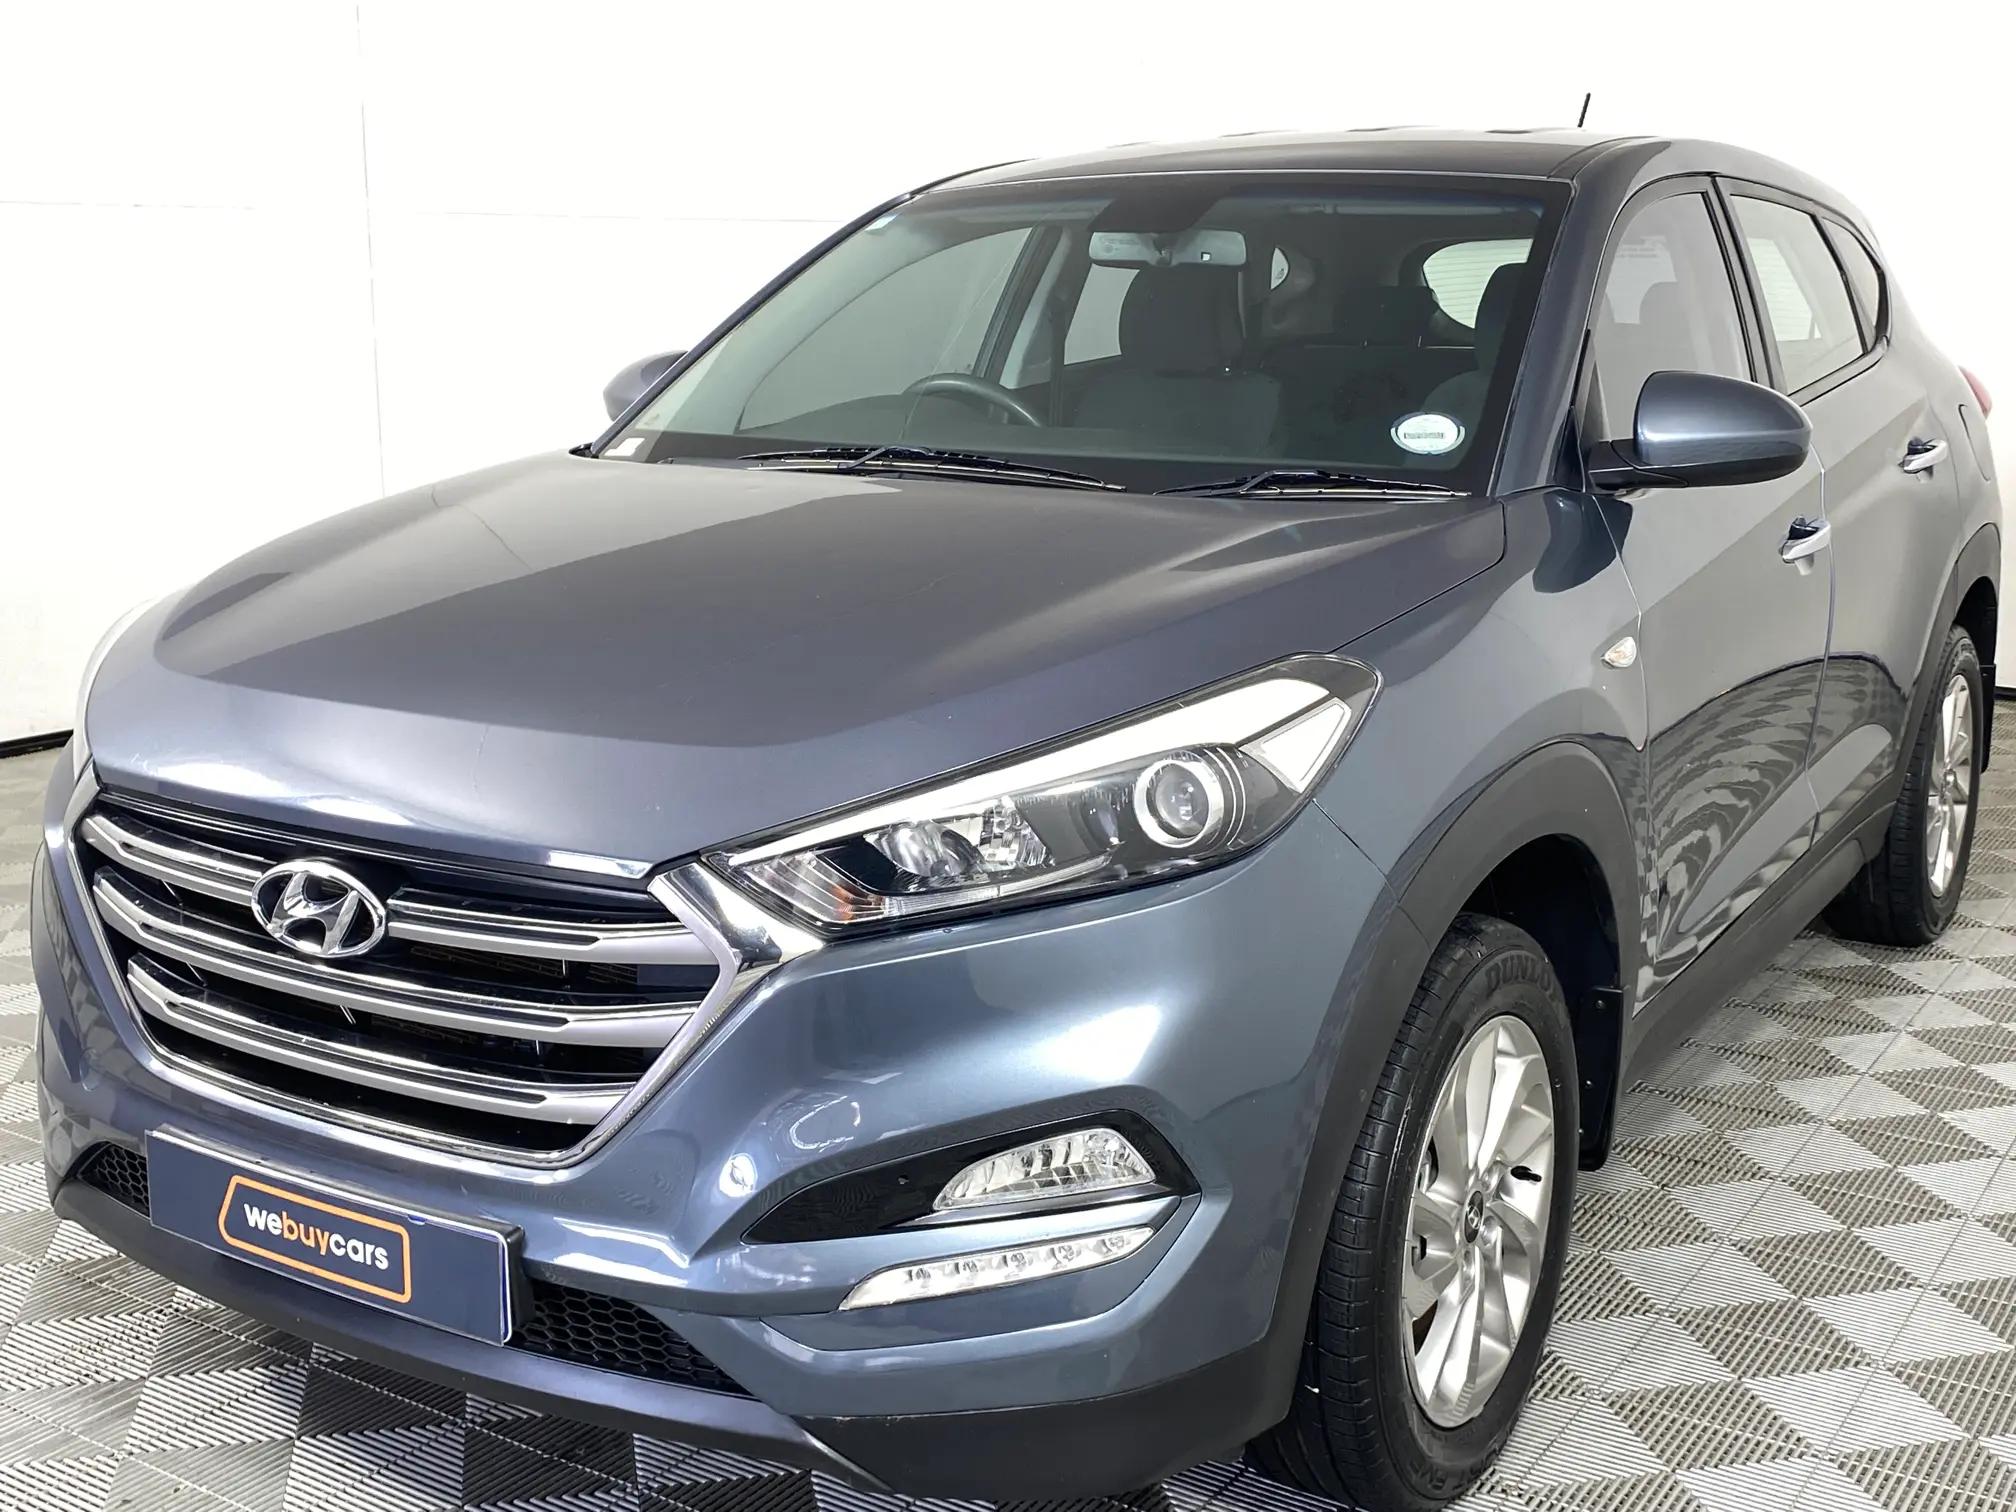 Hyundai Tucson 2.0 Nu Premium